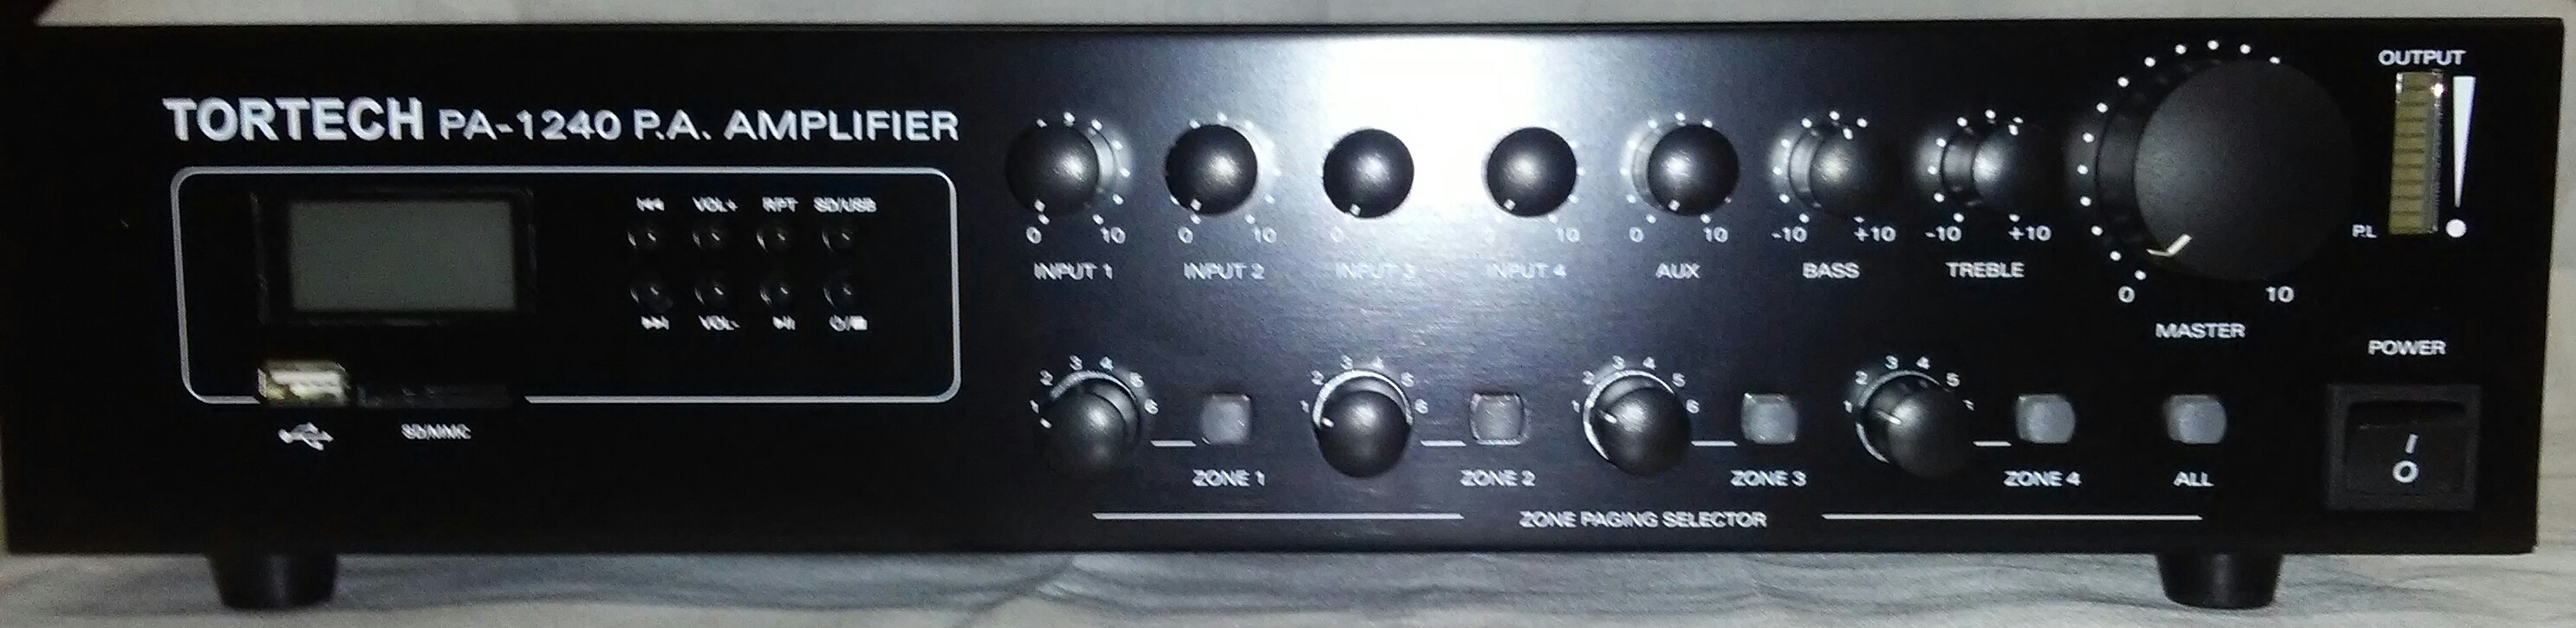 PA1240USB   240 Watt PA Mixer/Amplifier with 4 Zone Capability & USB 